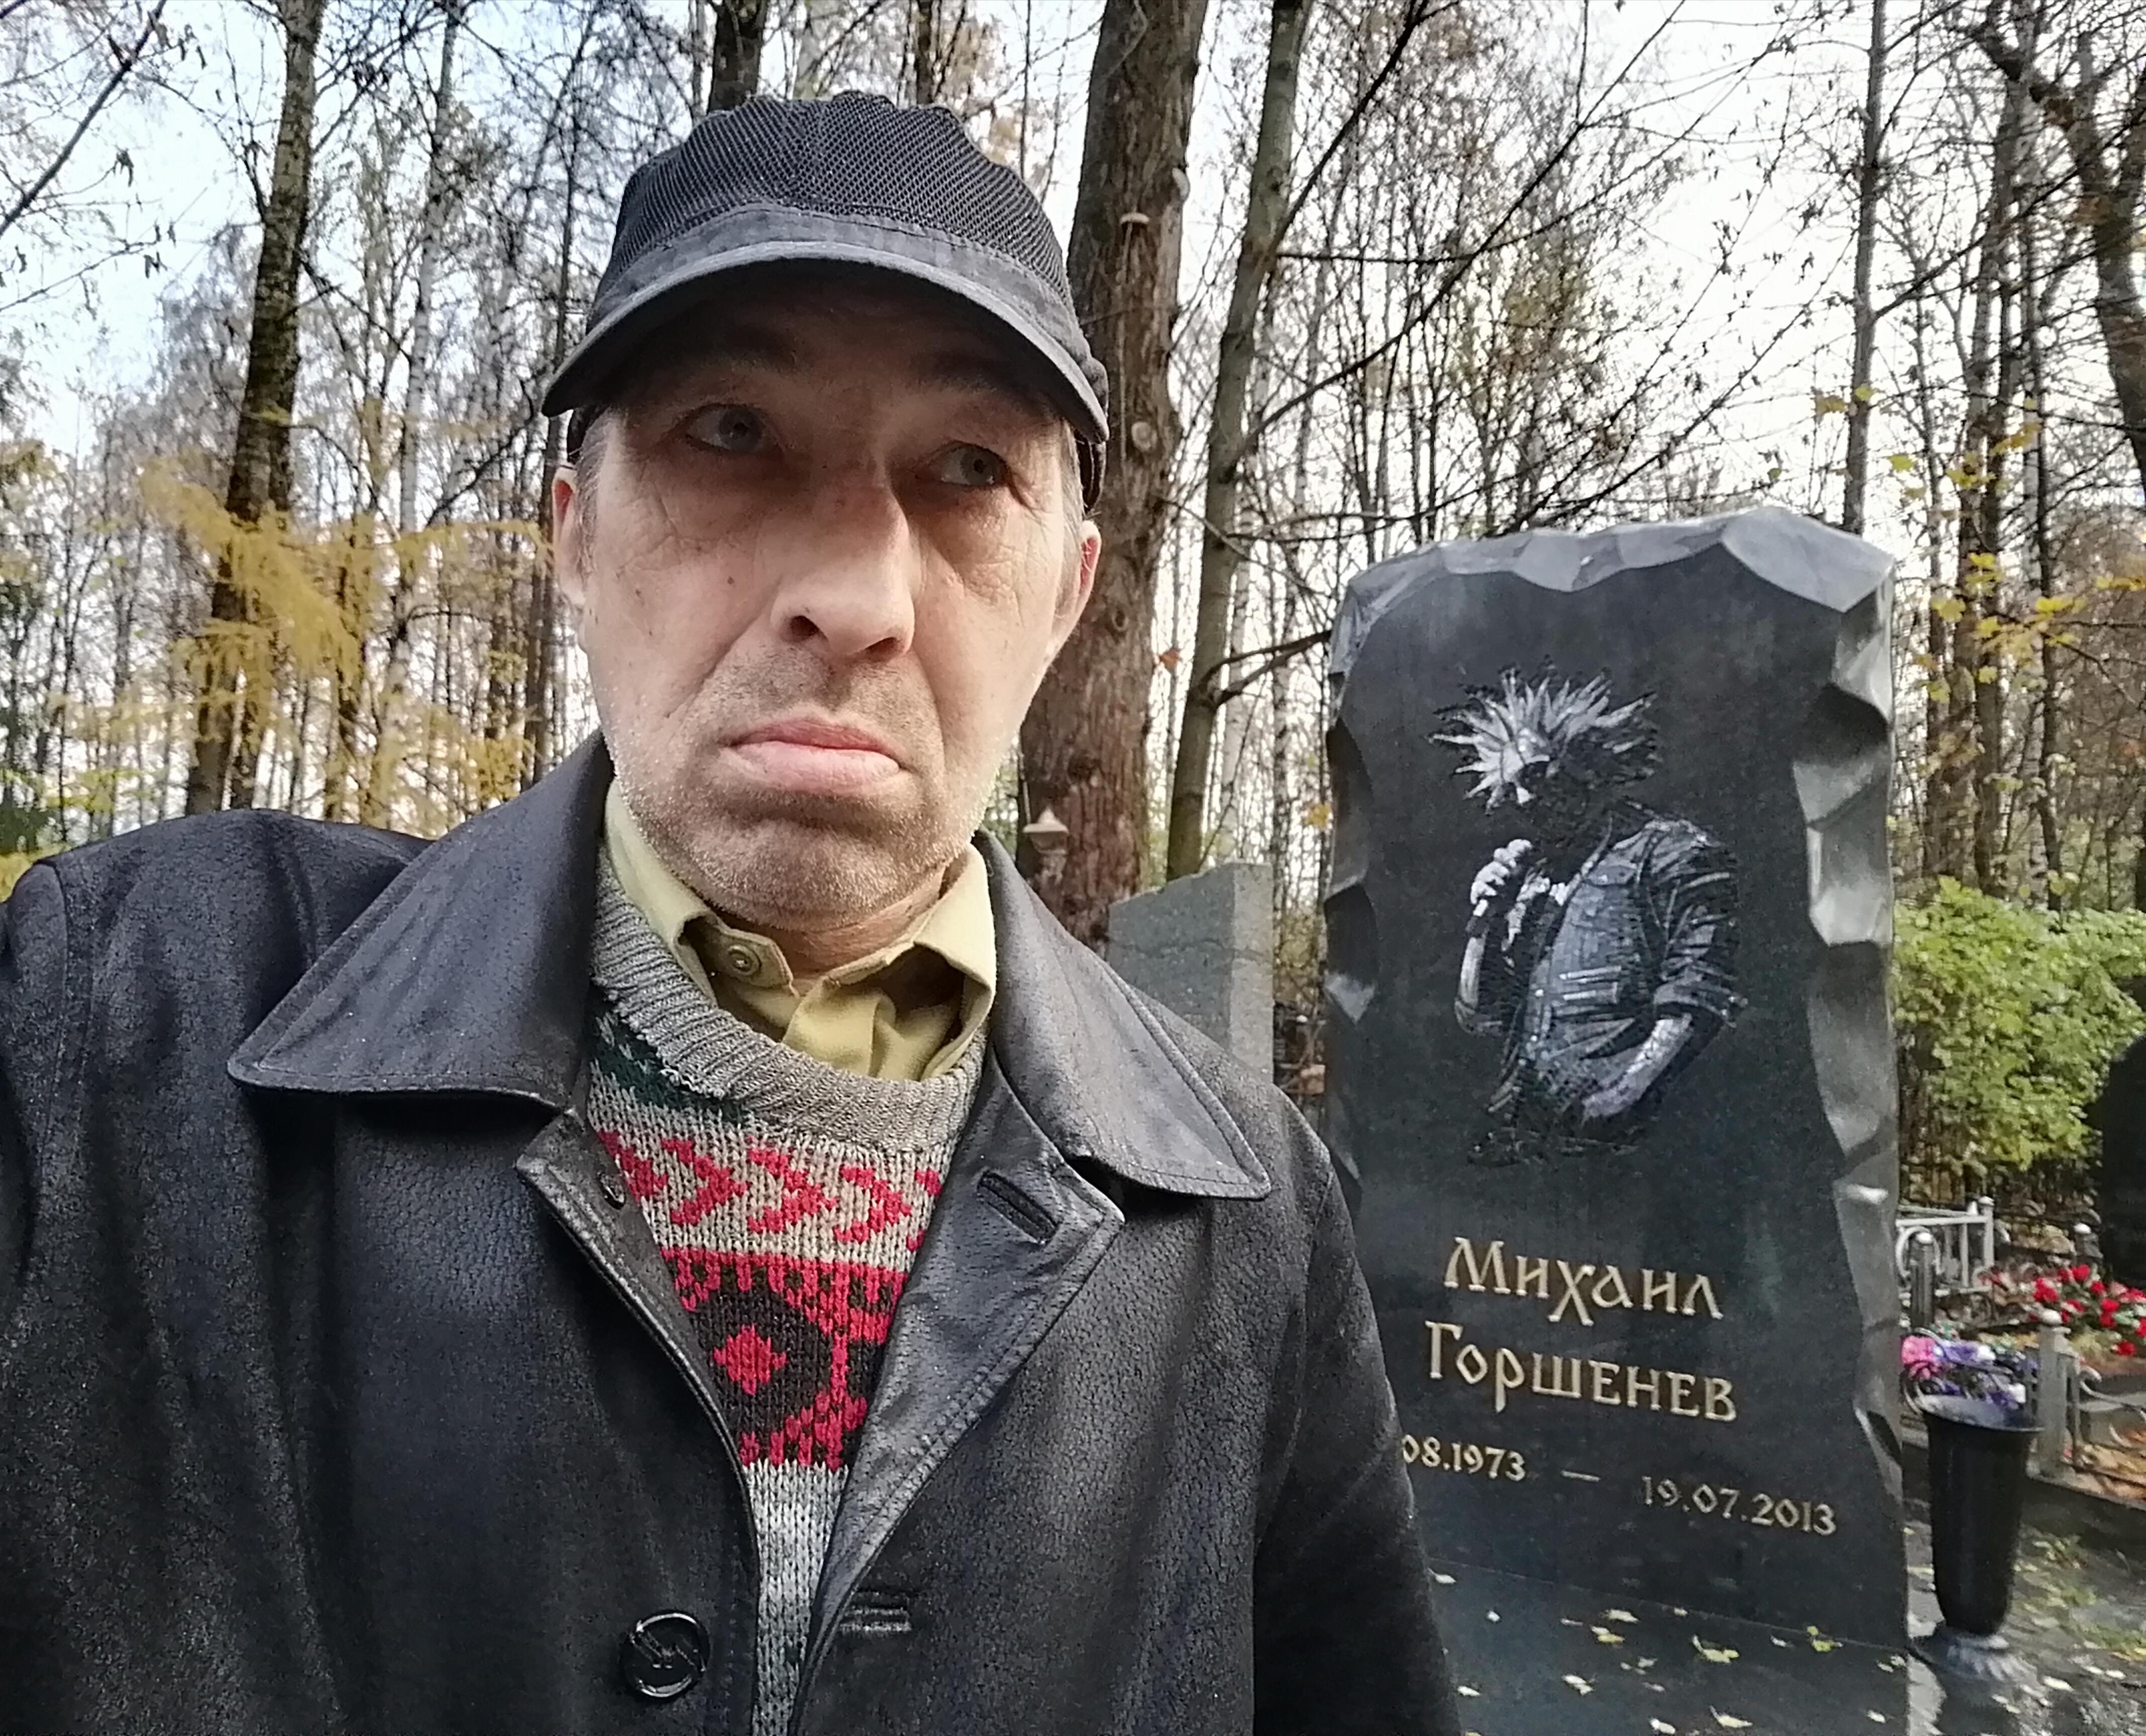 Годовщина смерти Михаила Горшенева